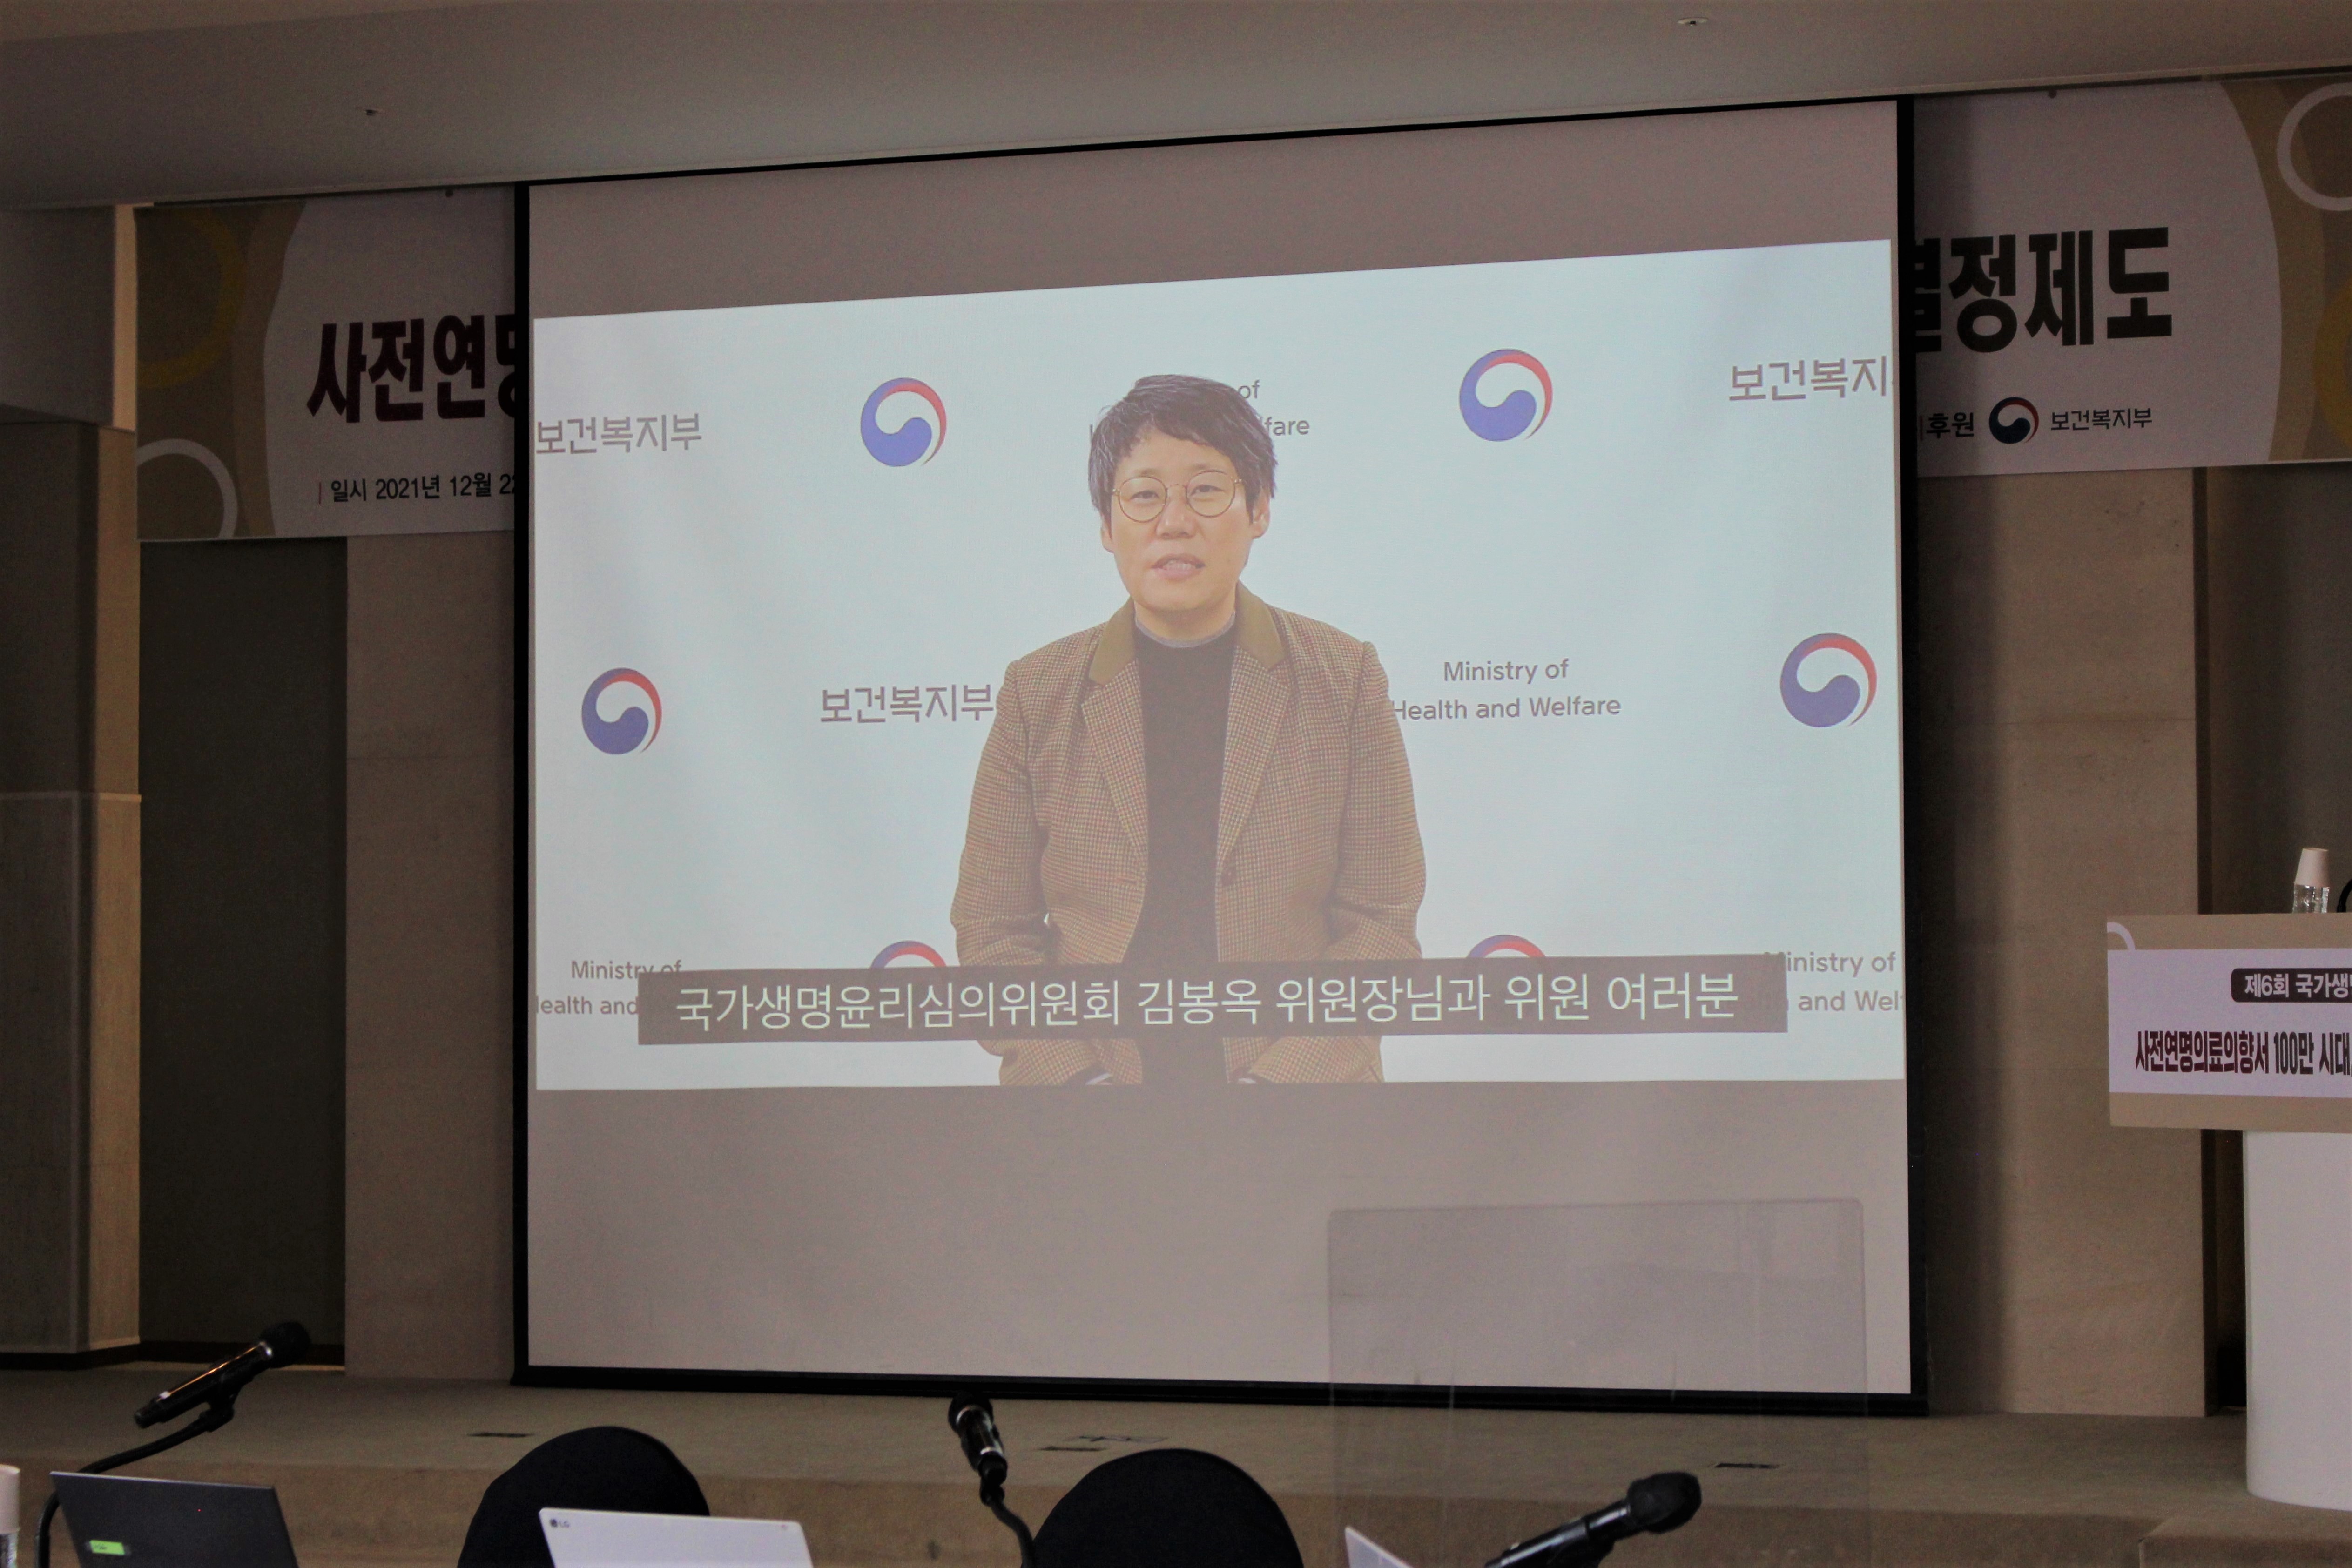 제6회 국가생명윤리포럼 개최(21.12.22) 사진2